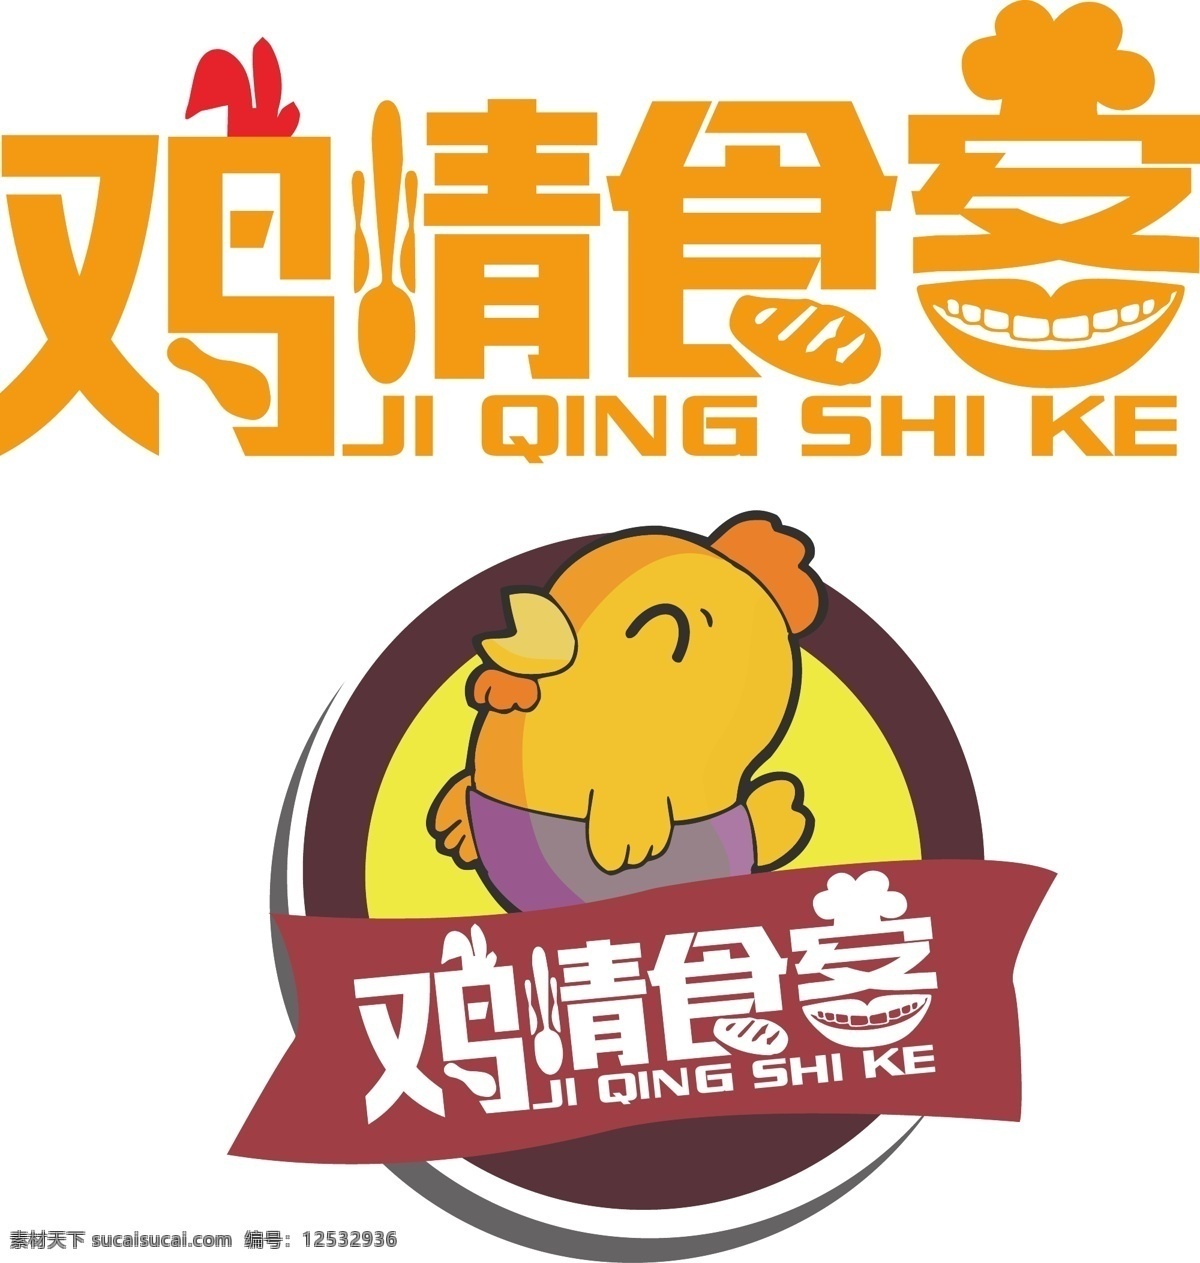 鸡 情 食客 logo 鸡情食客 鸡logo 鸡排logo 快餐 鸡情设计 快餐原创 鸡标志 矢量图 卡通鸡素材 标志图标